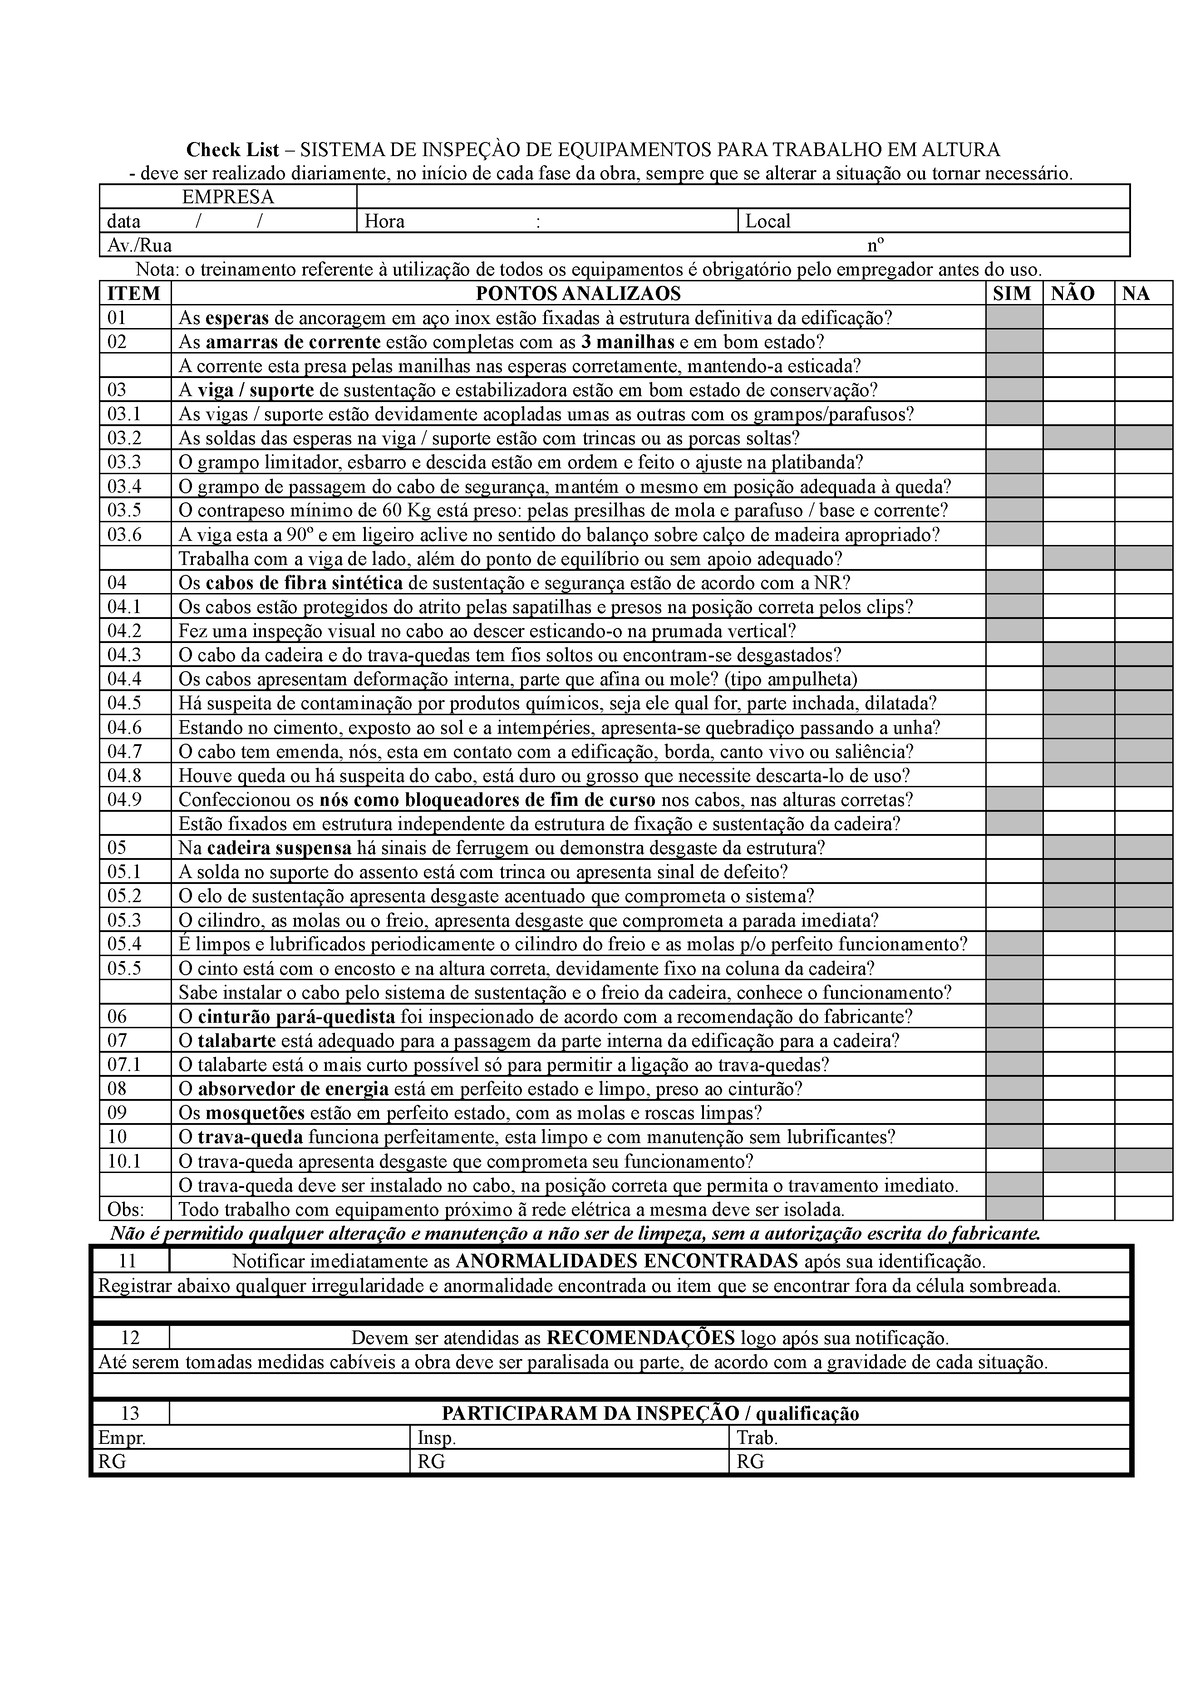 Check List Trabalhos Em Altura Check List Sistema De InspeÇÀo De Equipamentos Para Trabalho 0627